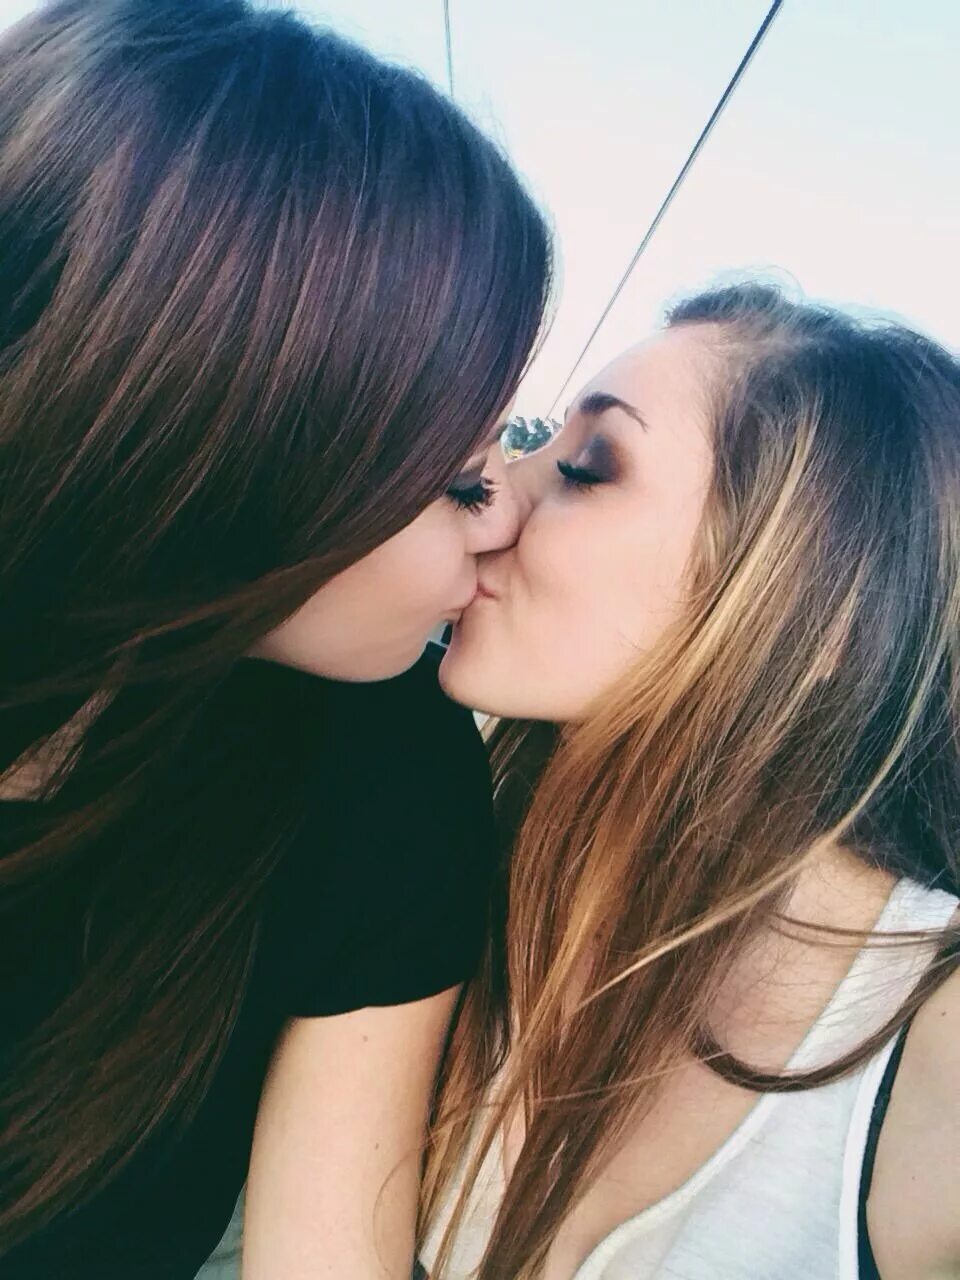 Lesbian net. Красивые девушки лизбиянки. Девушки целуются. Самые красивые девочки лесби. Несовершеннолетние лесби.